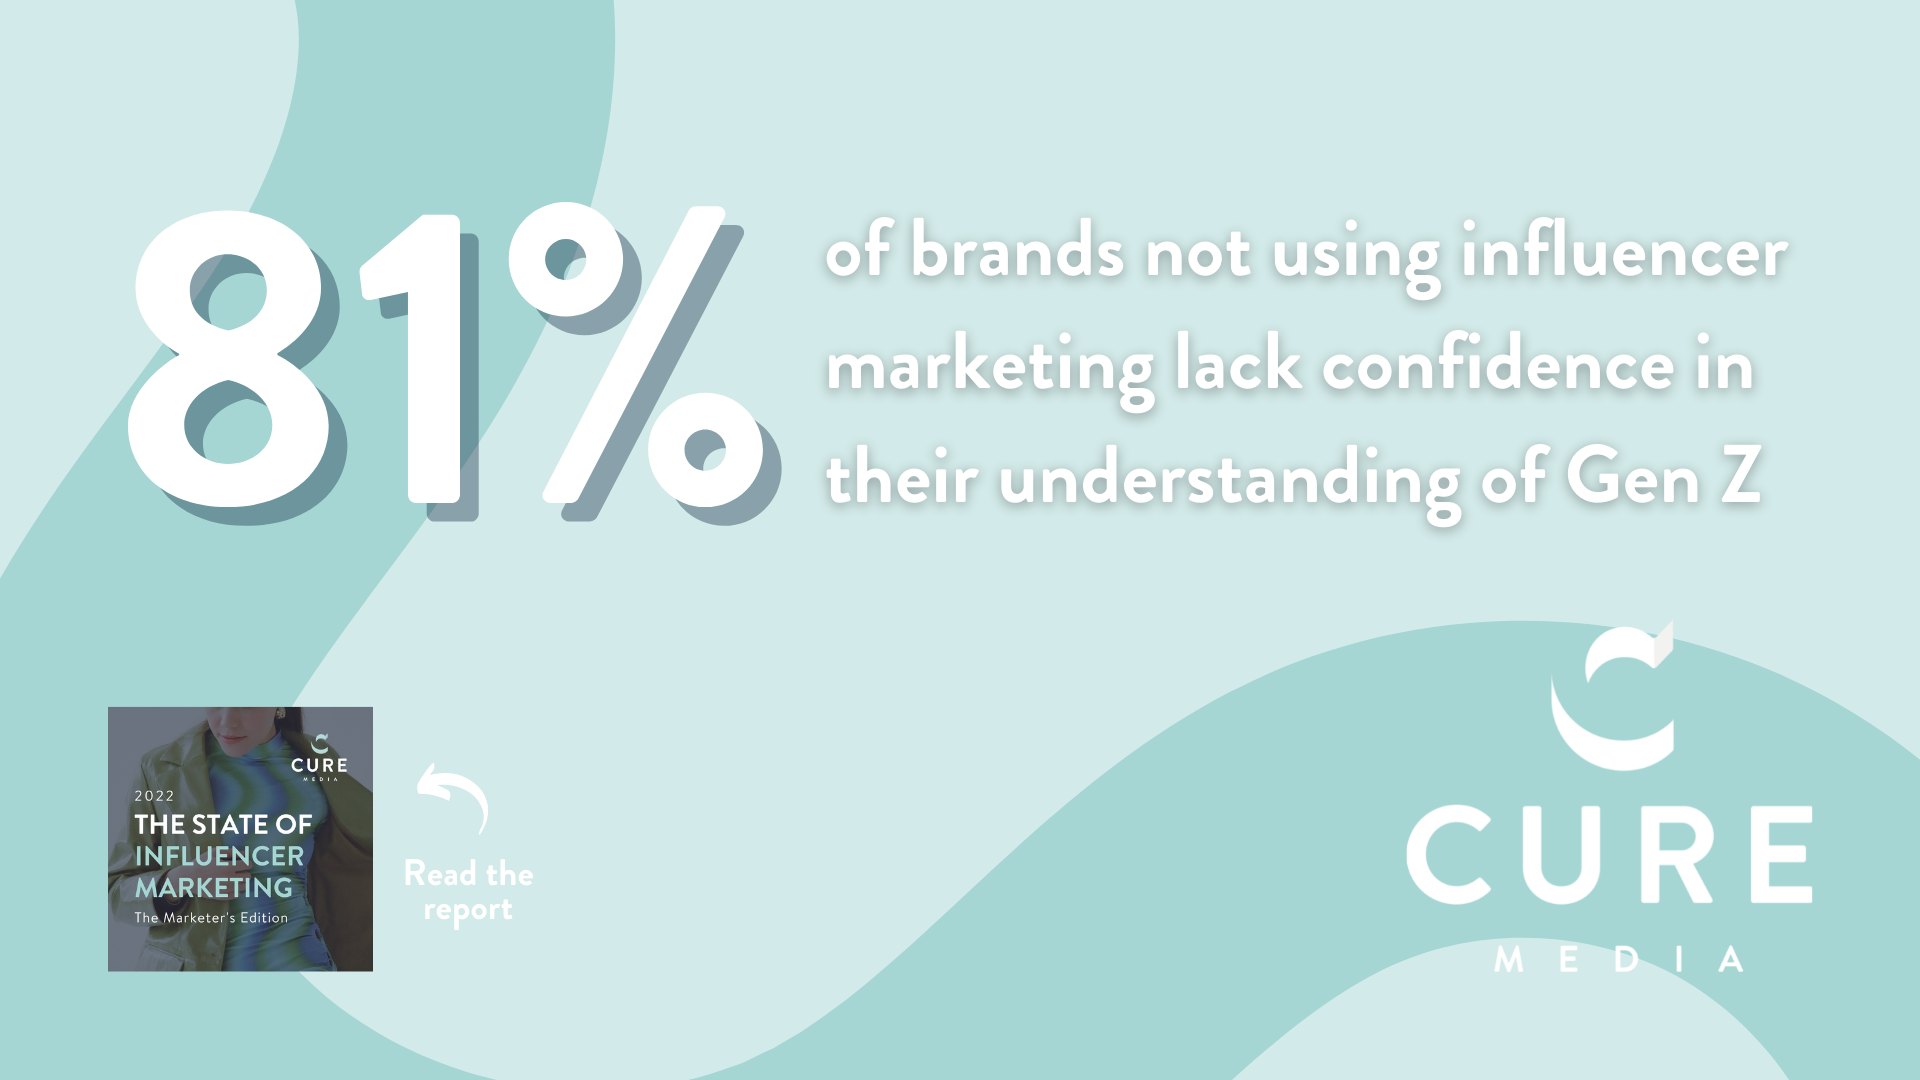 Influencer marketing statistics about brands understanding Gen Z